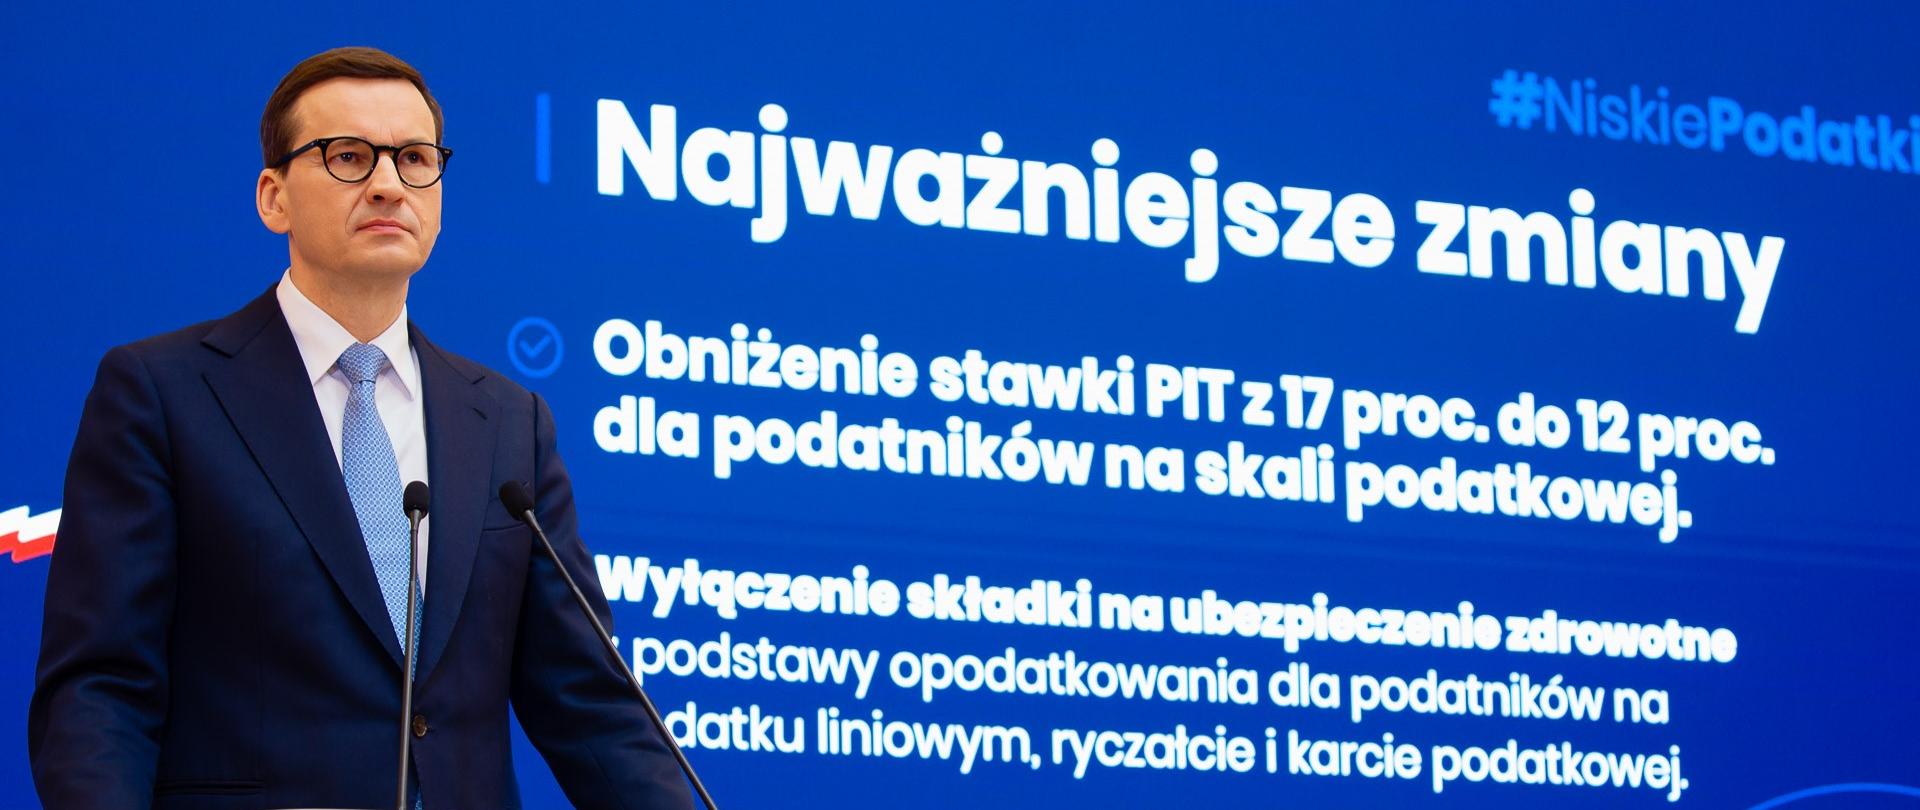 Ochrona polskich rodzin - korzystne zmiany podatkowe, fot. KPRM